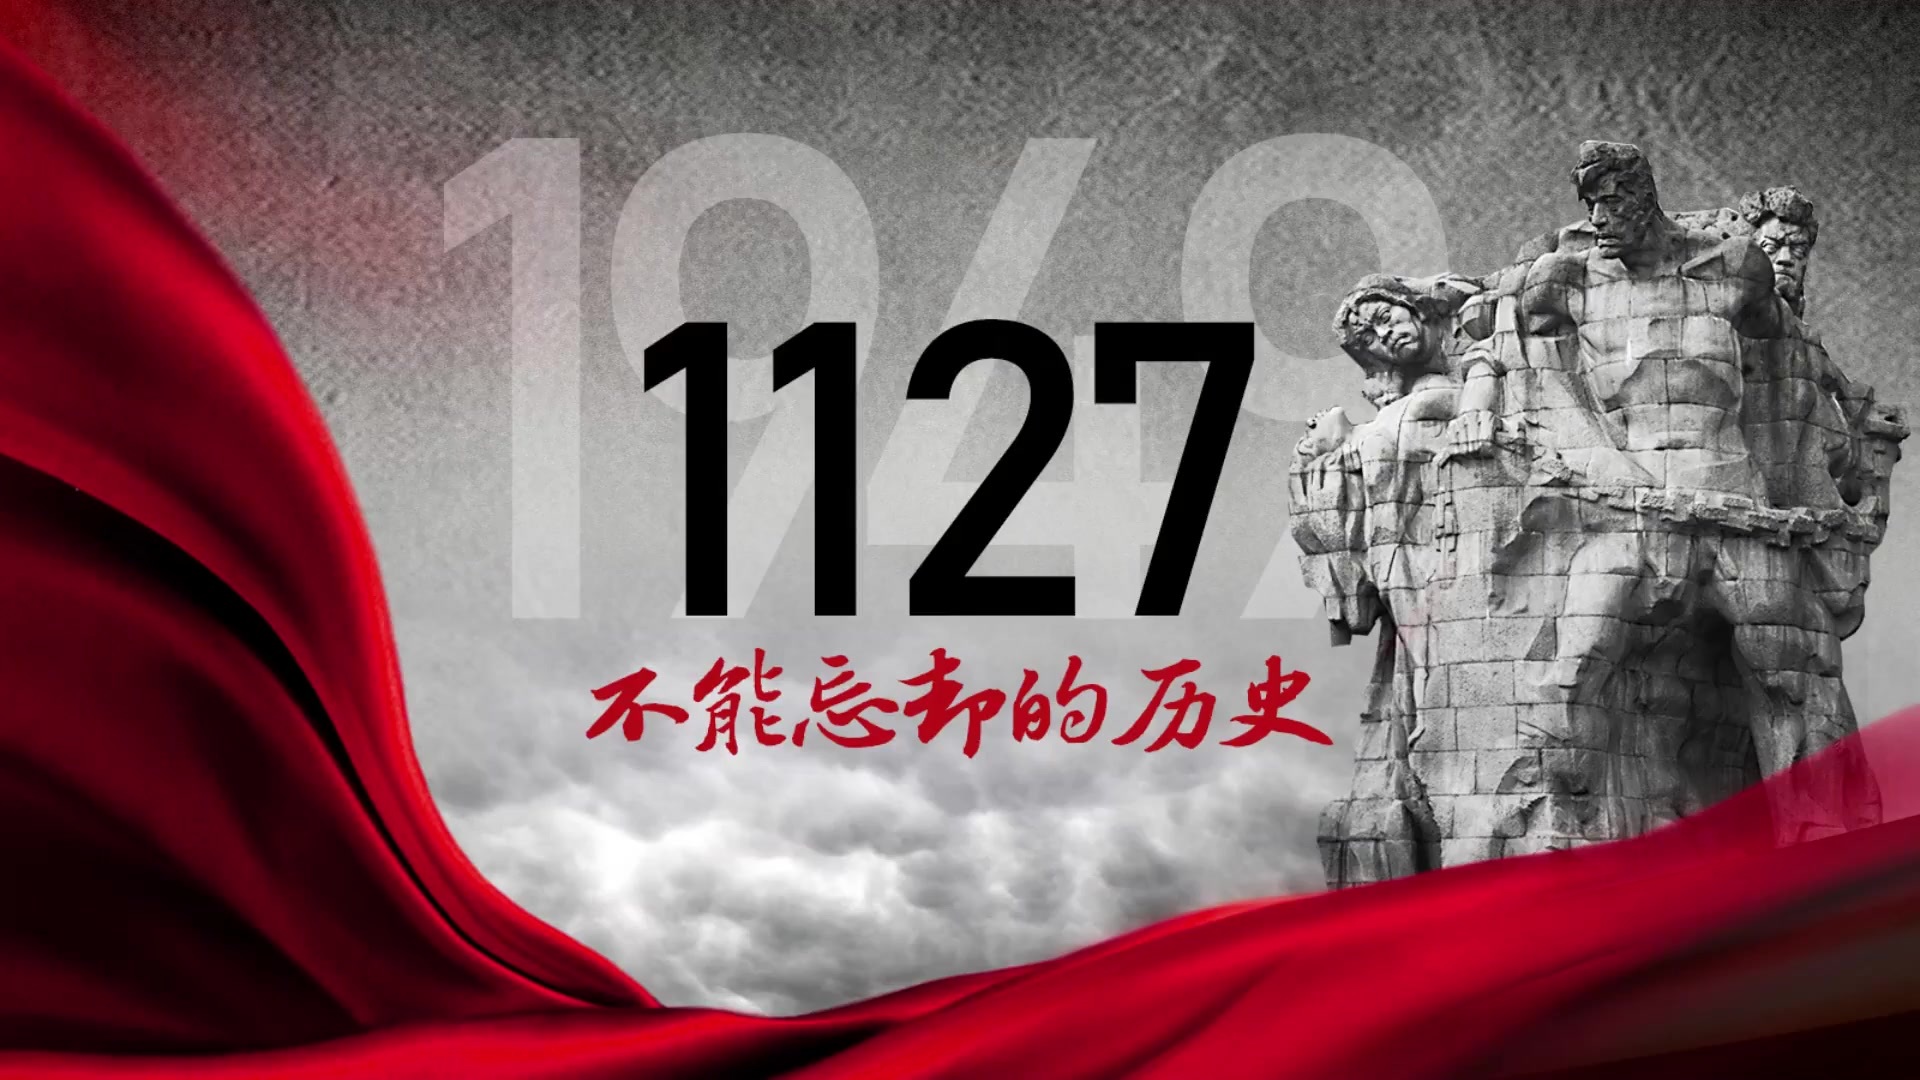 不能忘却的历史 —— 缅怀重庆“11·27大屠杀”遇难烈士